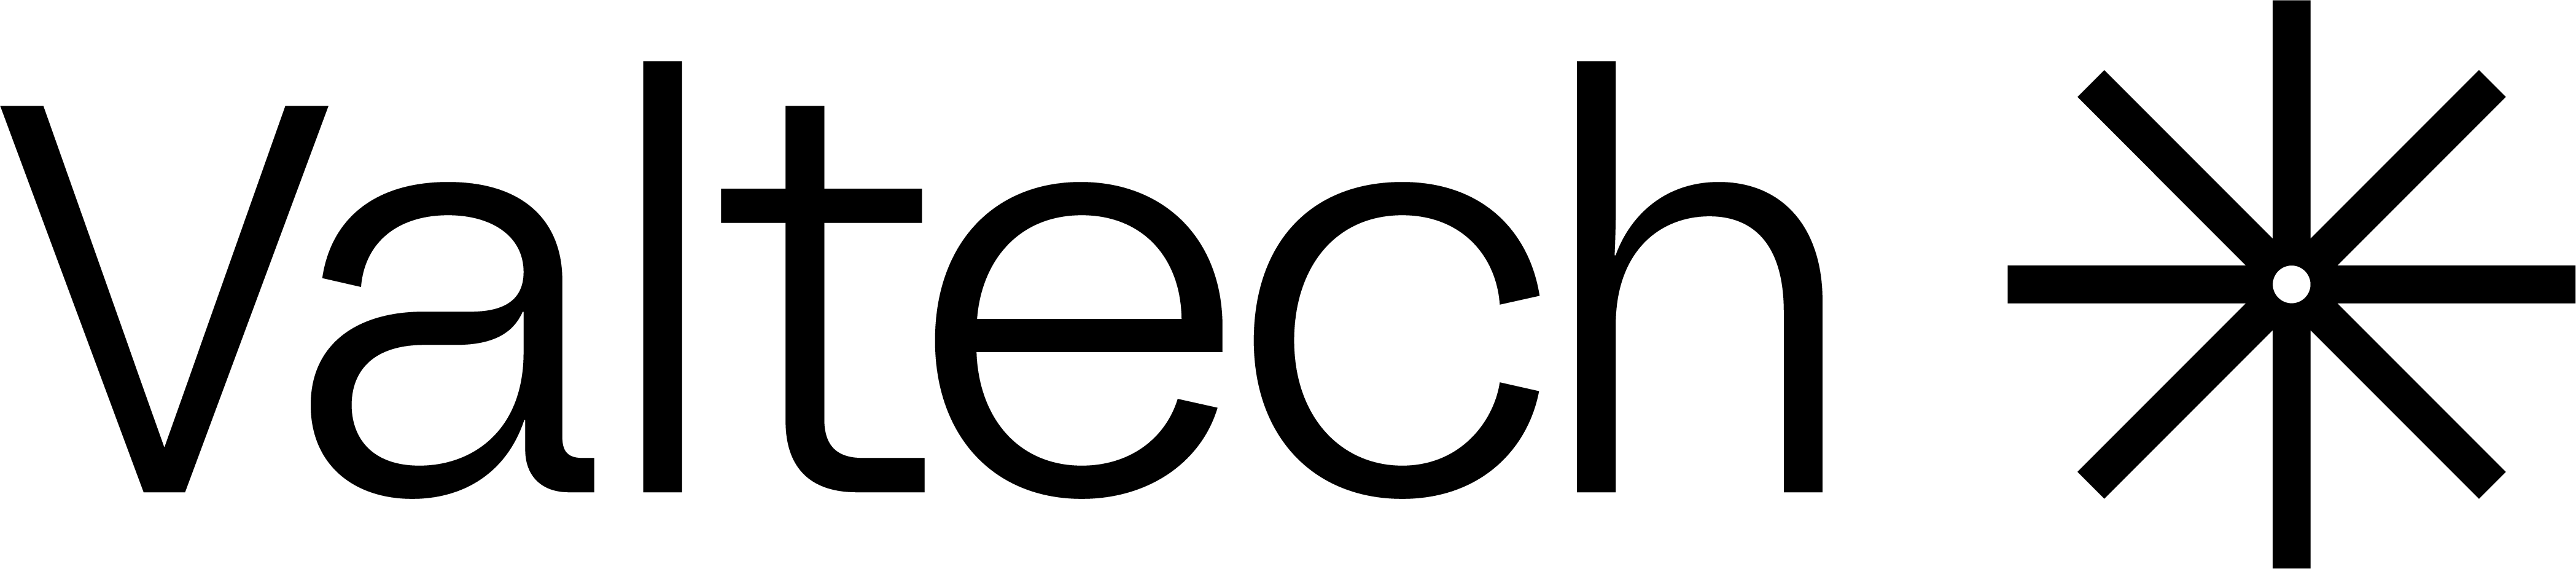 Valtech Logo